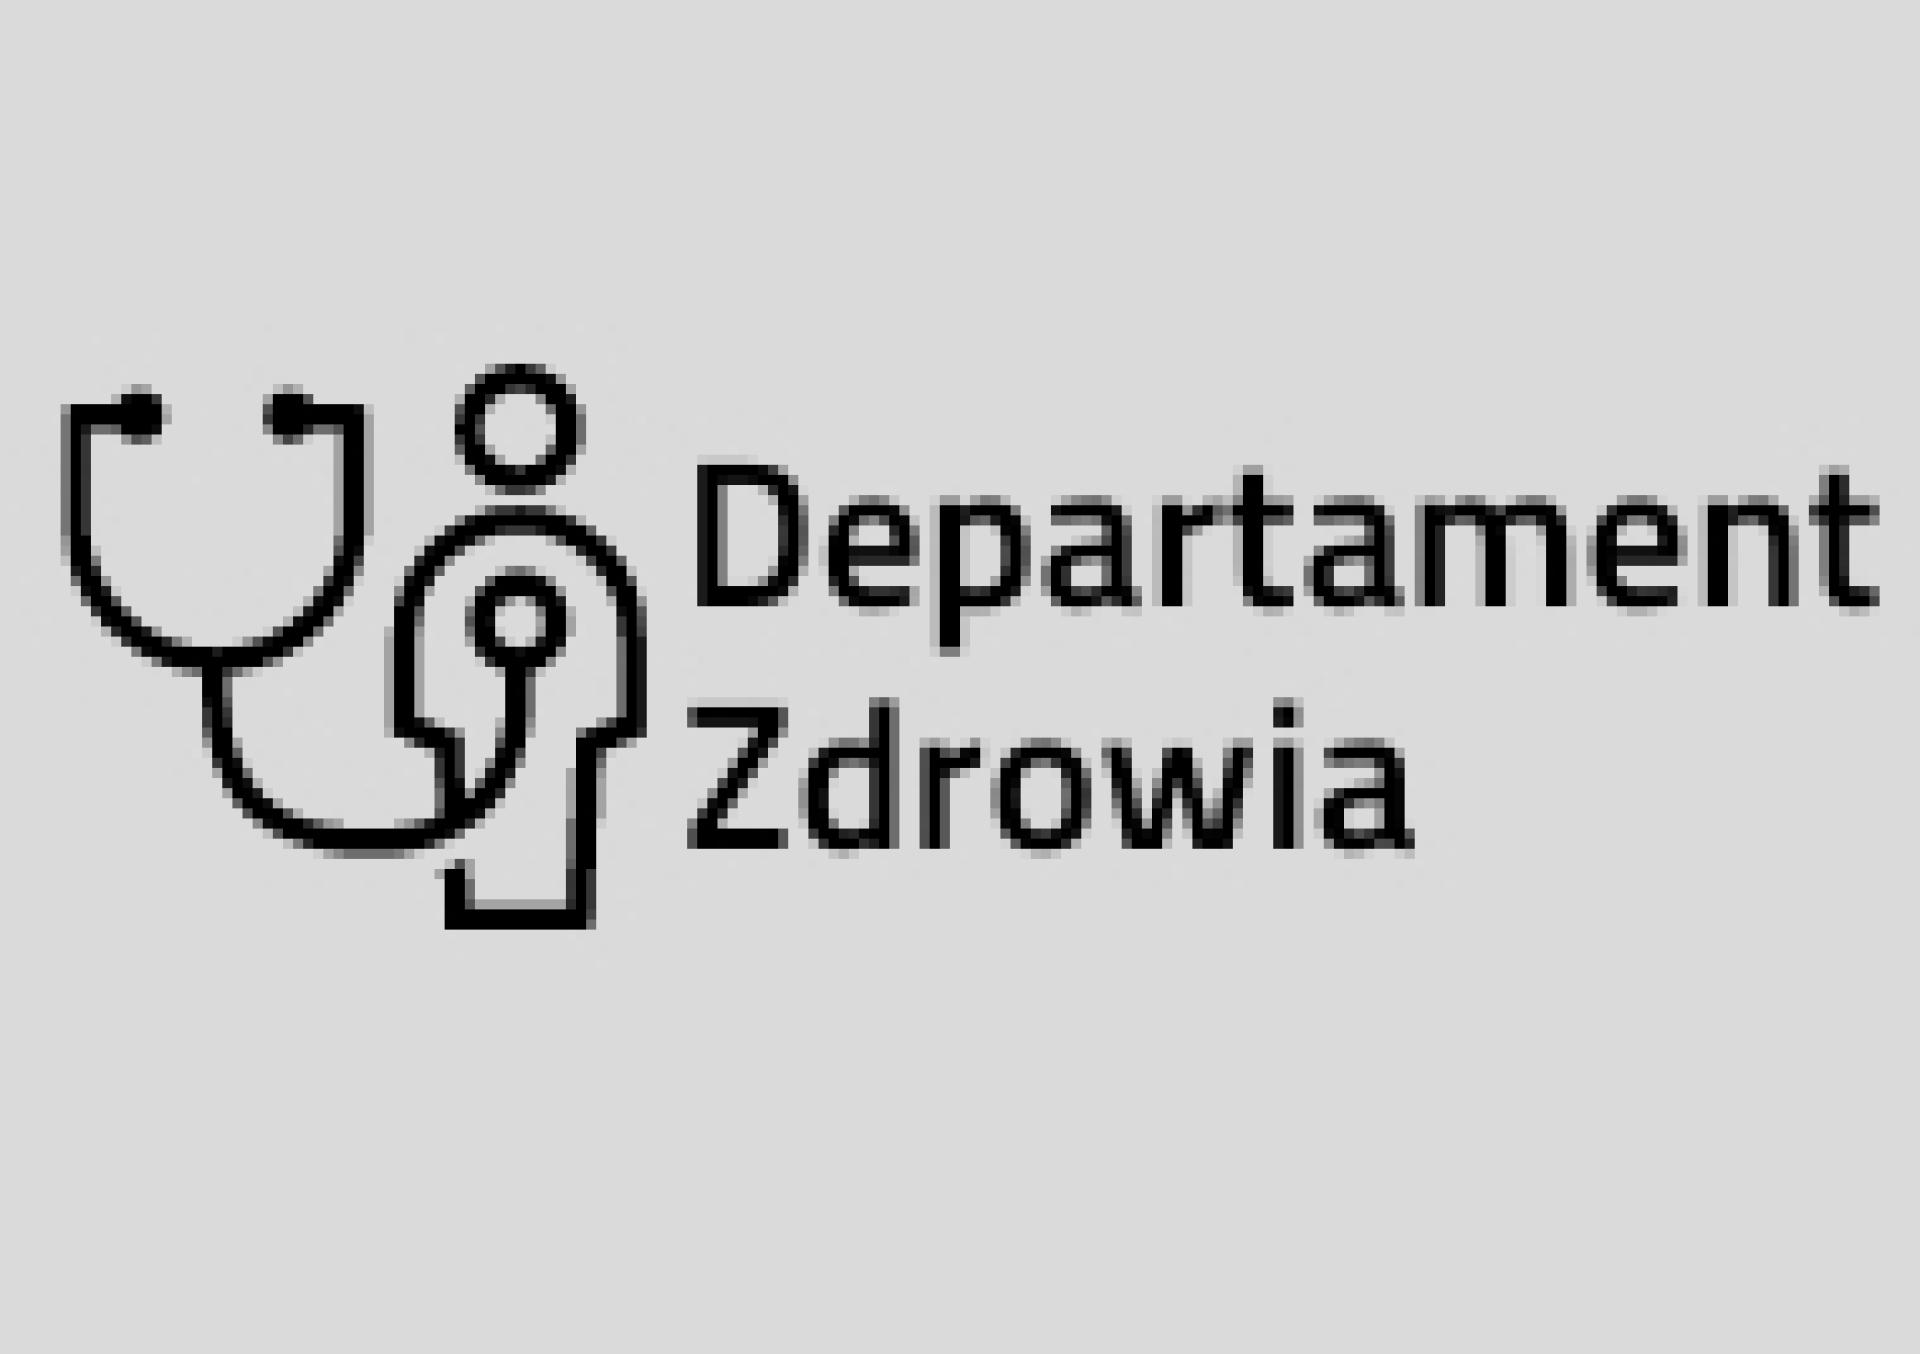 Konsultacje projektu uchwały Sejmiku Województwa Wielkopolskiego w sprawie nadania statutu Szpitalowi Wojewódzkiemu w Poznaniu - zobacz więcej